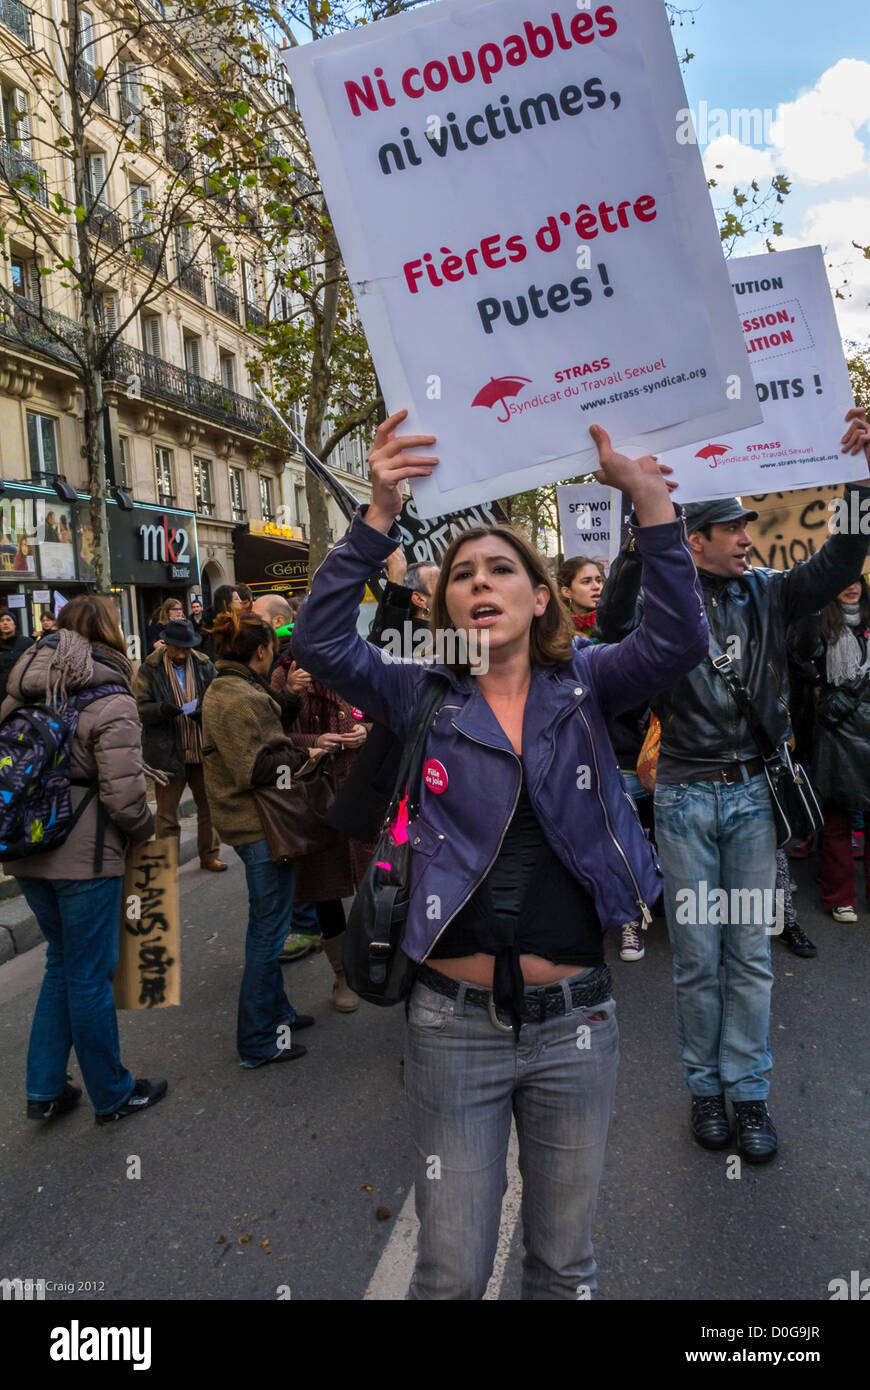 Paris, France, manifestation contre la violence faite aux femmes, groupes  pour la prostitution légale, Journée internationale des droits des femmes,  égalité des femmes, marche de protestation des droits civils Photo Stock -